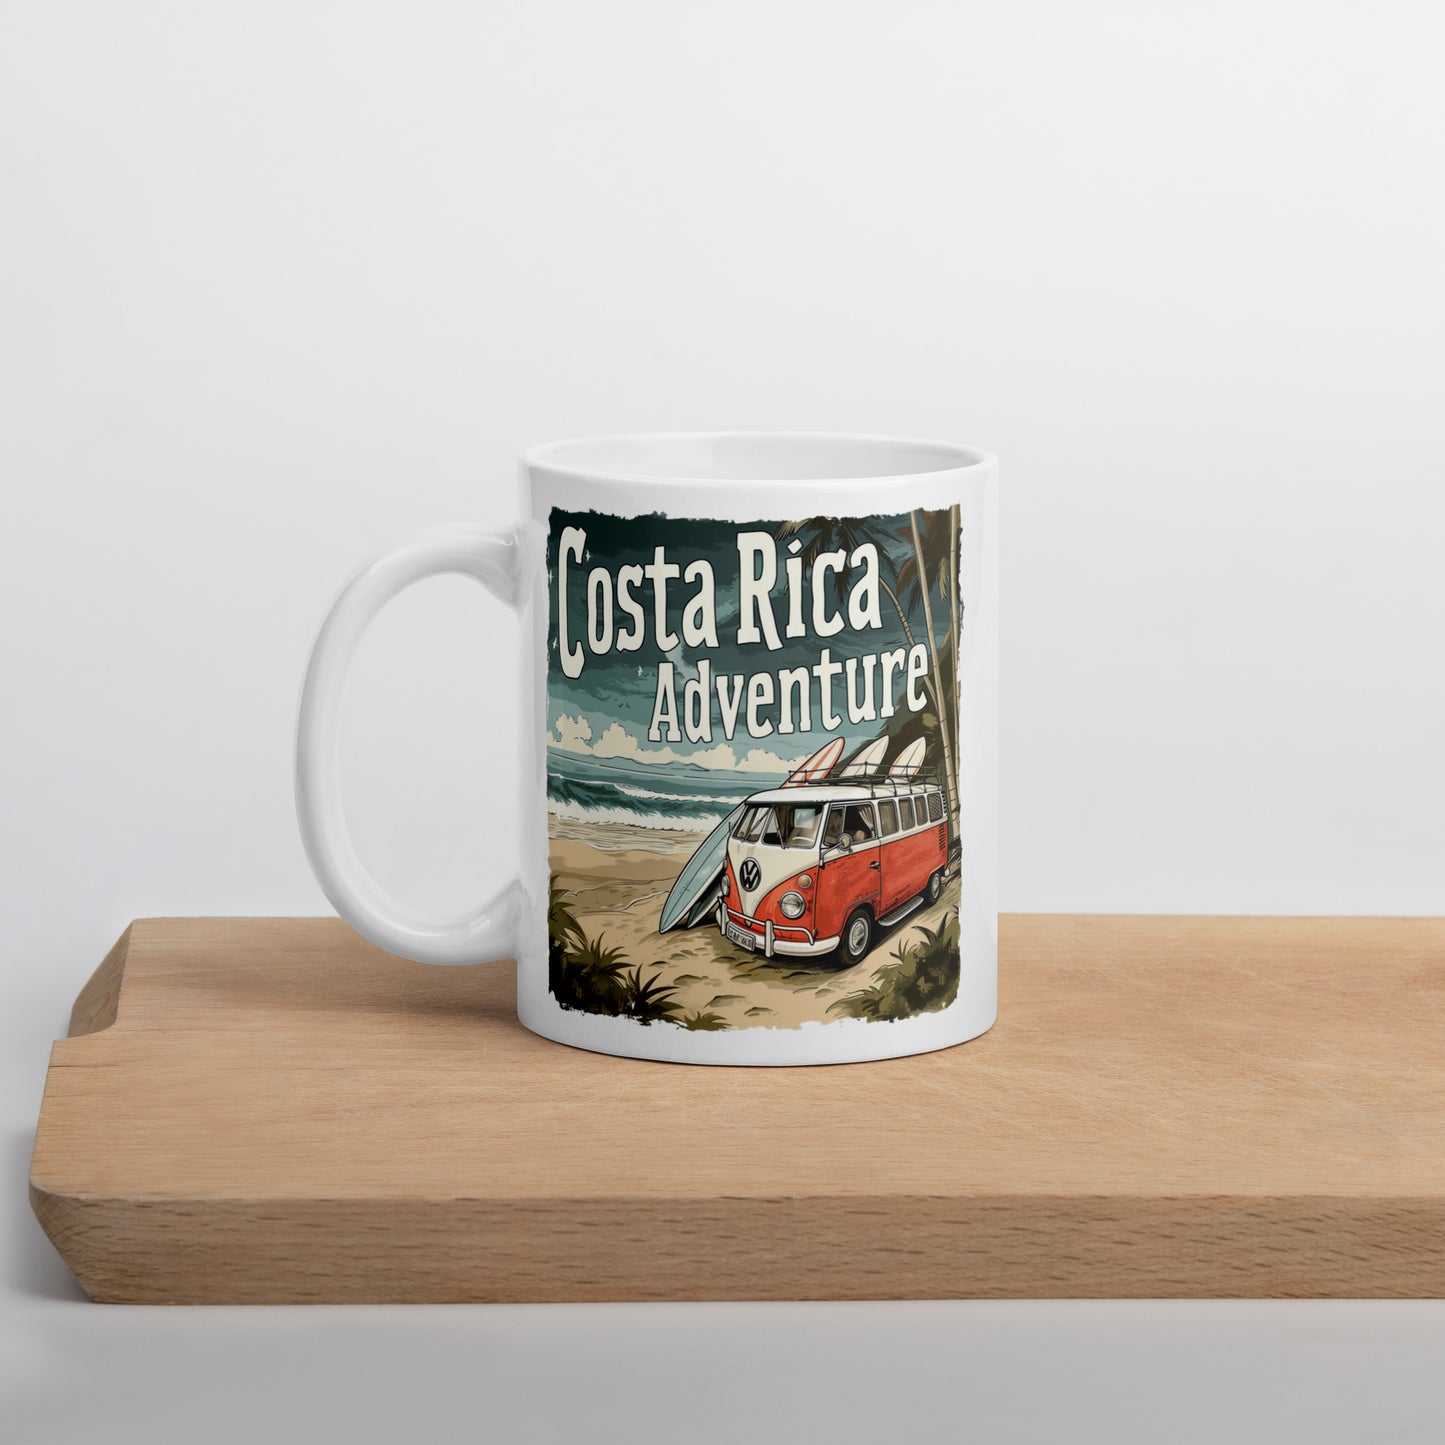 Costa Rica Surf Adventure Coffee Mug